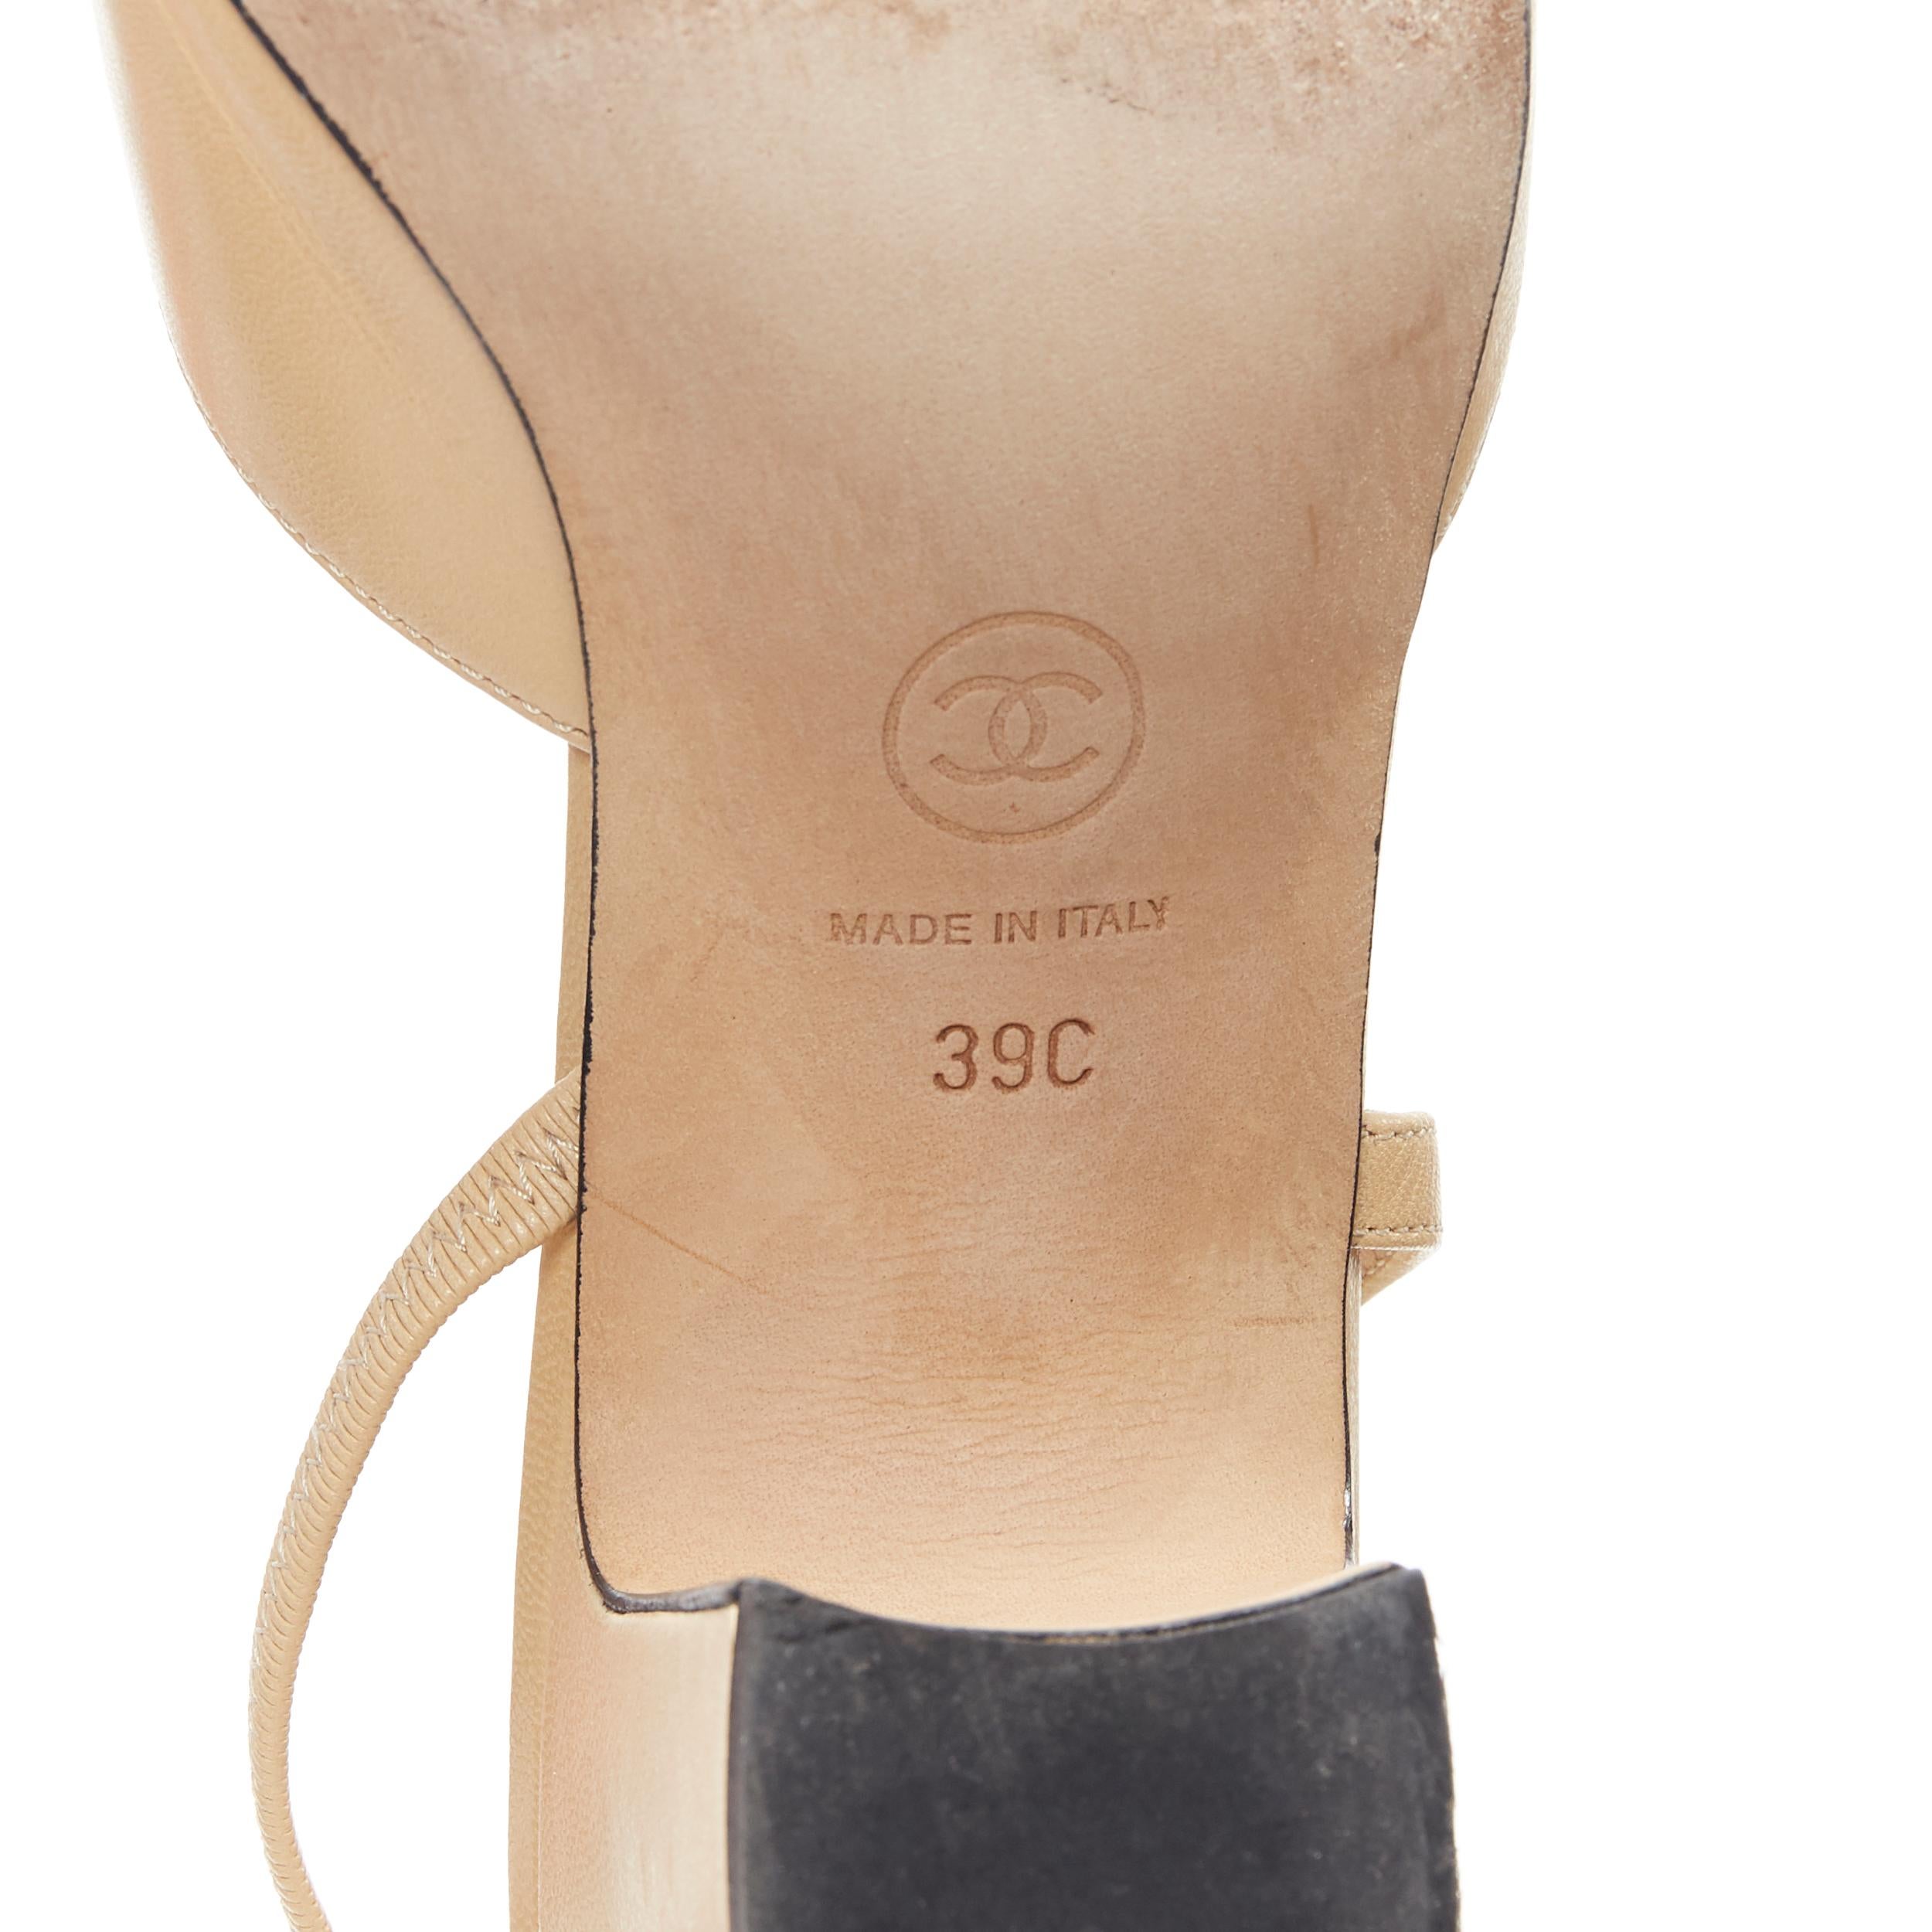 CHANEL nude leather black grosgrain toe cap CC logo block heel slingback EU39 C 4